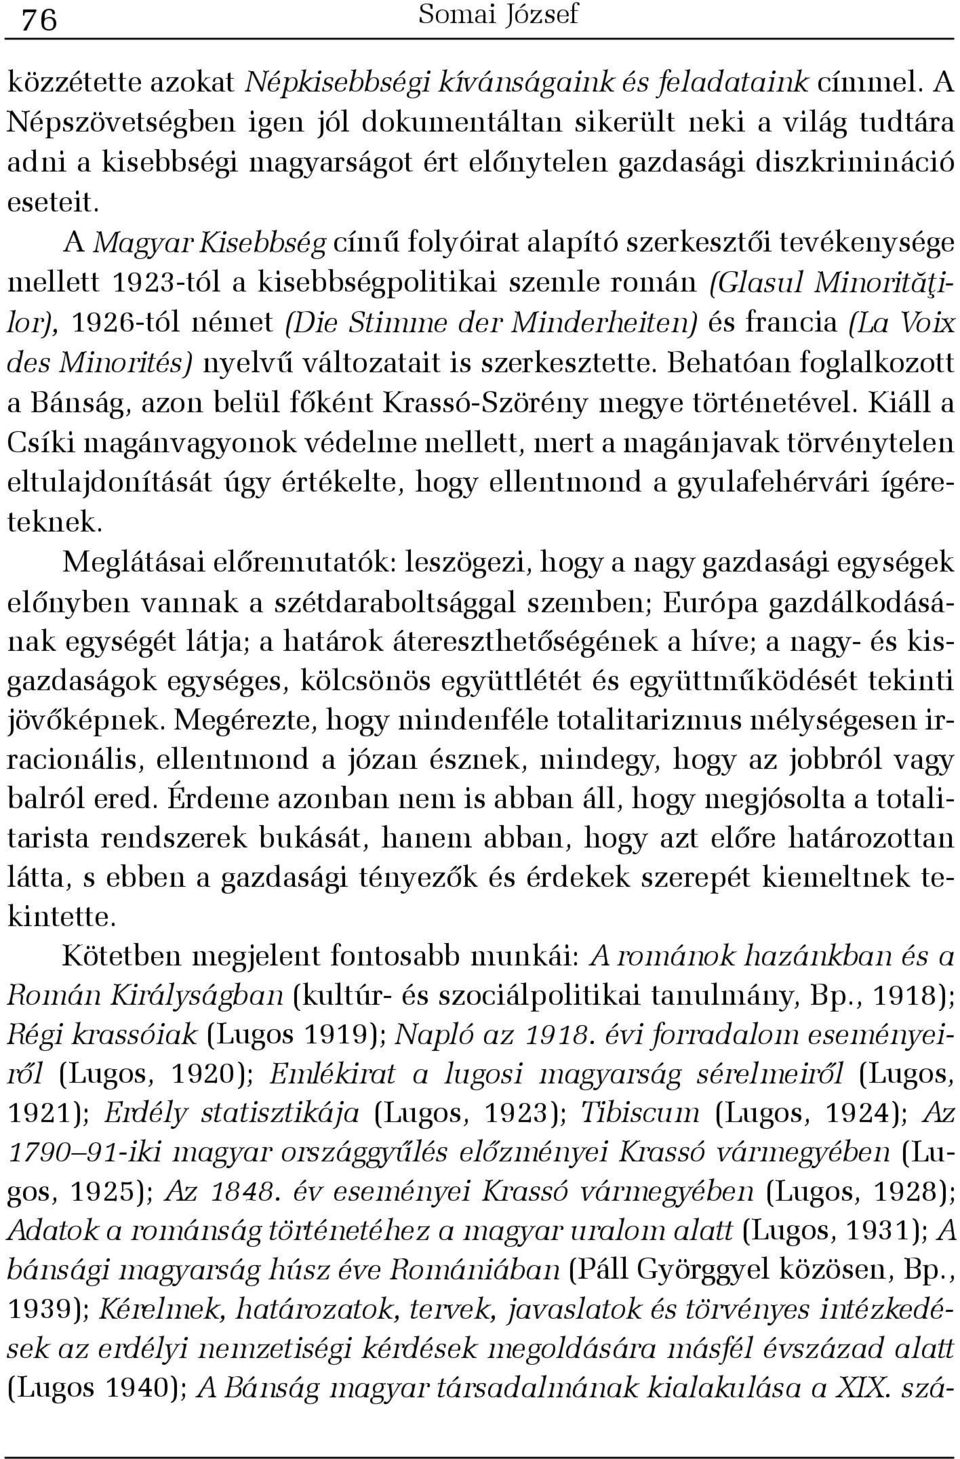 A Magyar Kisebbség címû folyóirat alapító szerkesztõi tevékenysége mellett 1923-tól a kisebbségpolitikai szemle román (Glasul Minoritãþilor), 1926-tól német (Die Stimme der Minderheiten) és francia